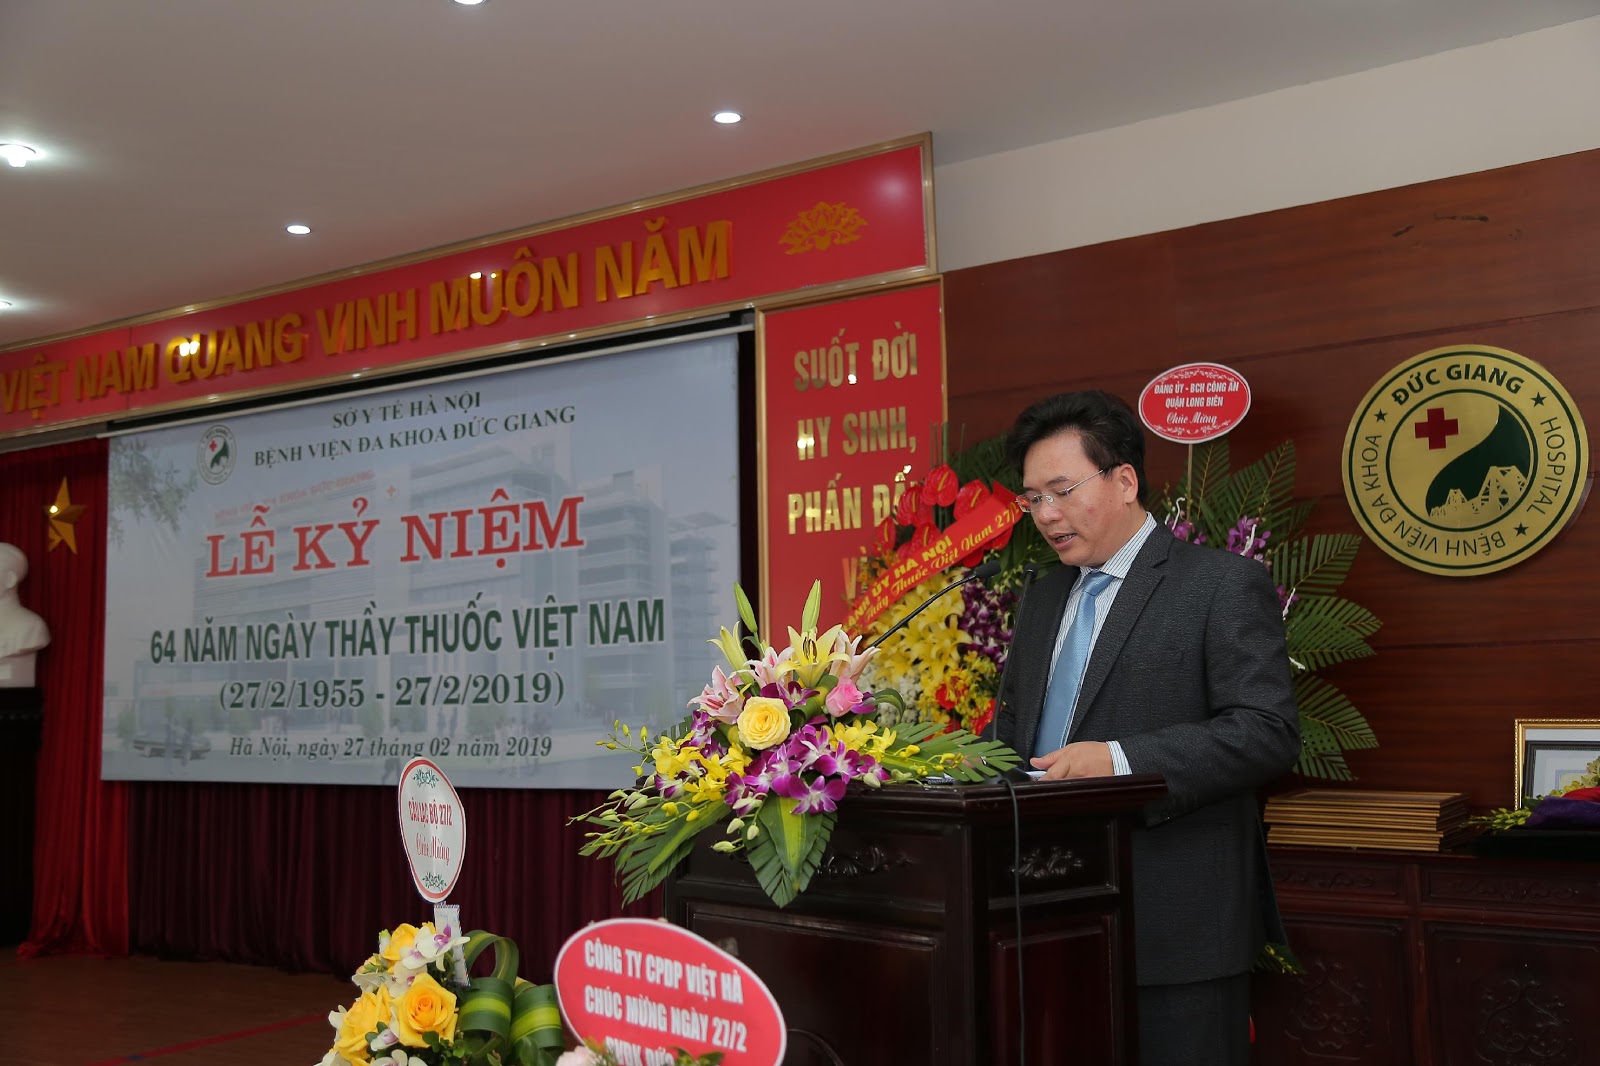 Bệnh viện đa khoa Đức Giang  Tổ chức lễ kỷ niệm 64 năm Ngày Thầy thuốc Việt Nam 